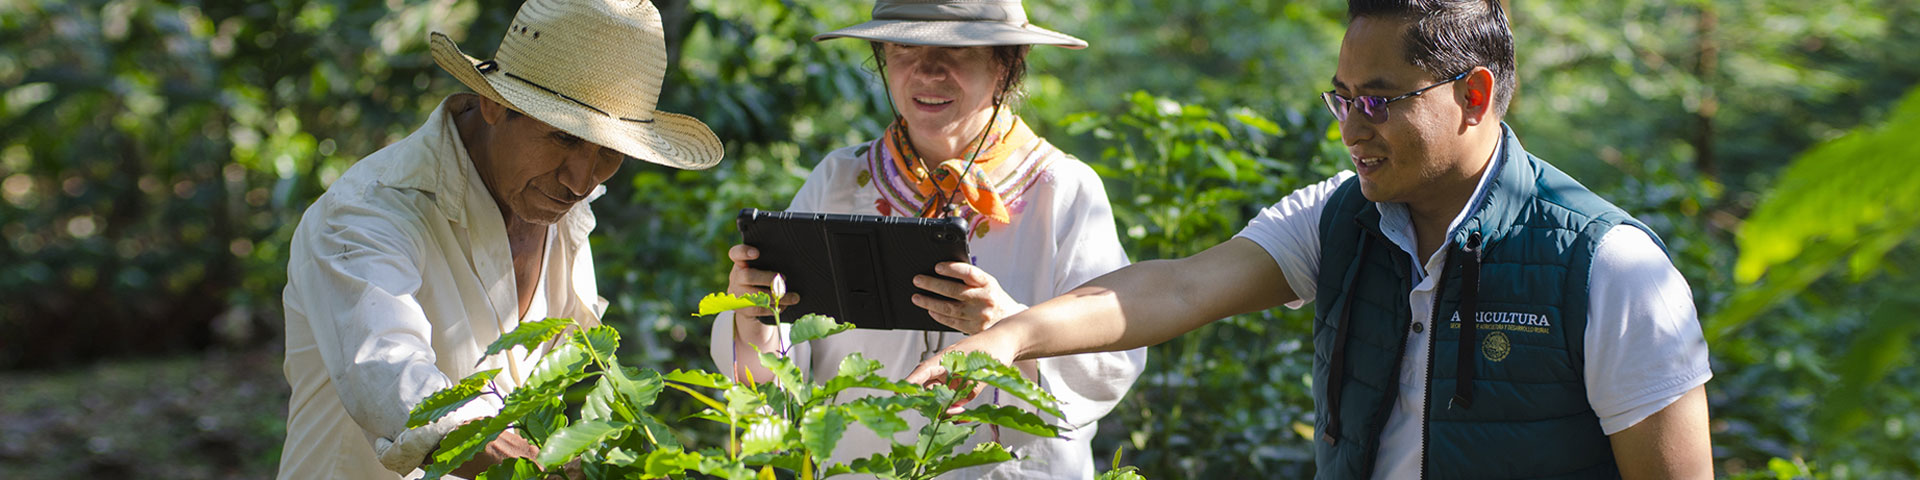 Una mujer sostiene una tableta en sus manos y observa una planta. Dos hombres, a su derecha y a su izquierda, dan una explicación sobre la planta.